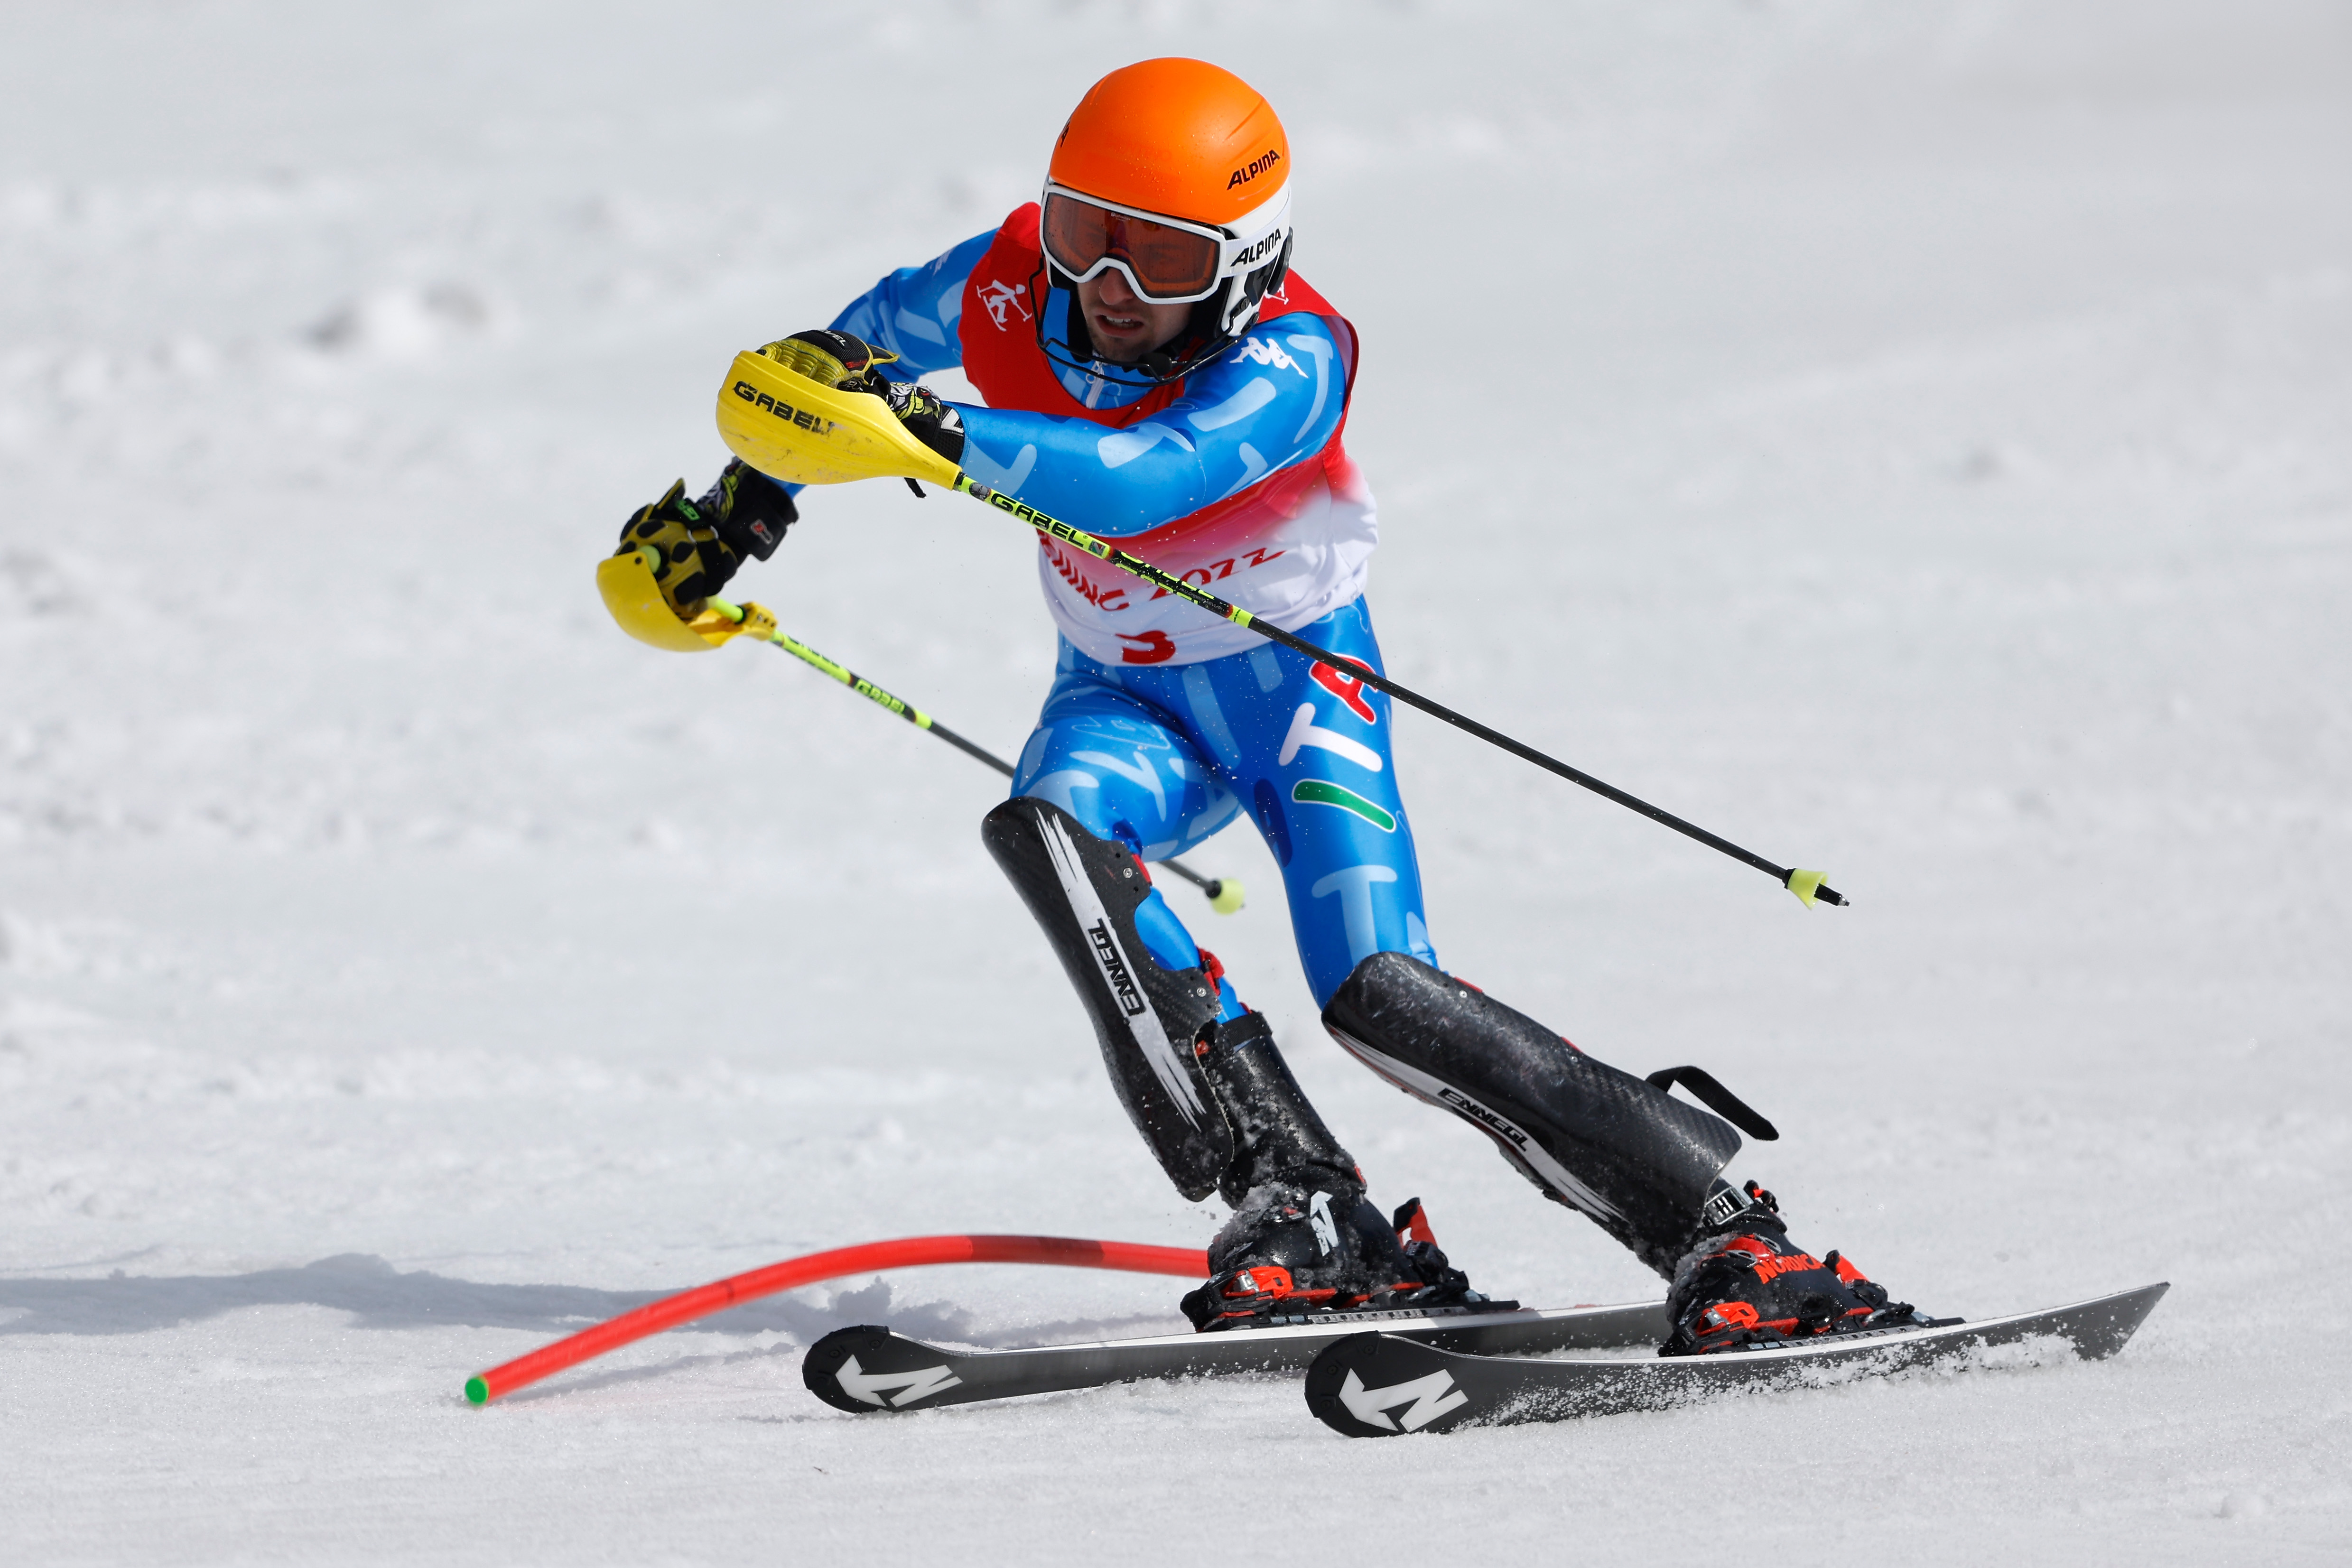 Fotos von paralympischen alpinen Skifahrern